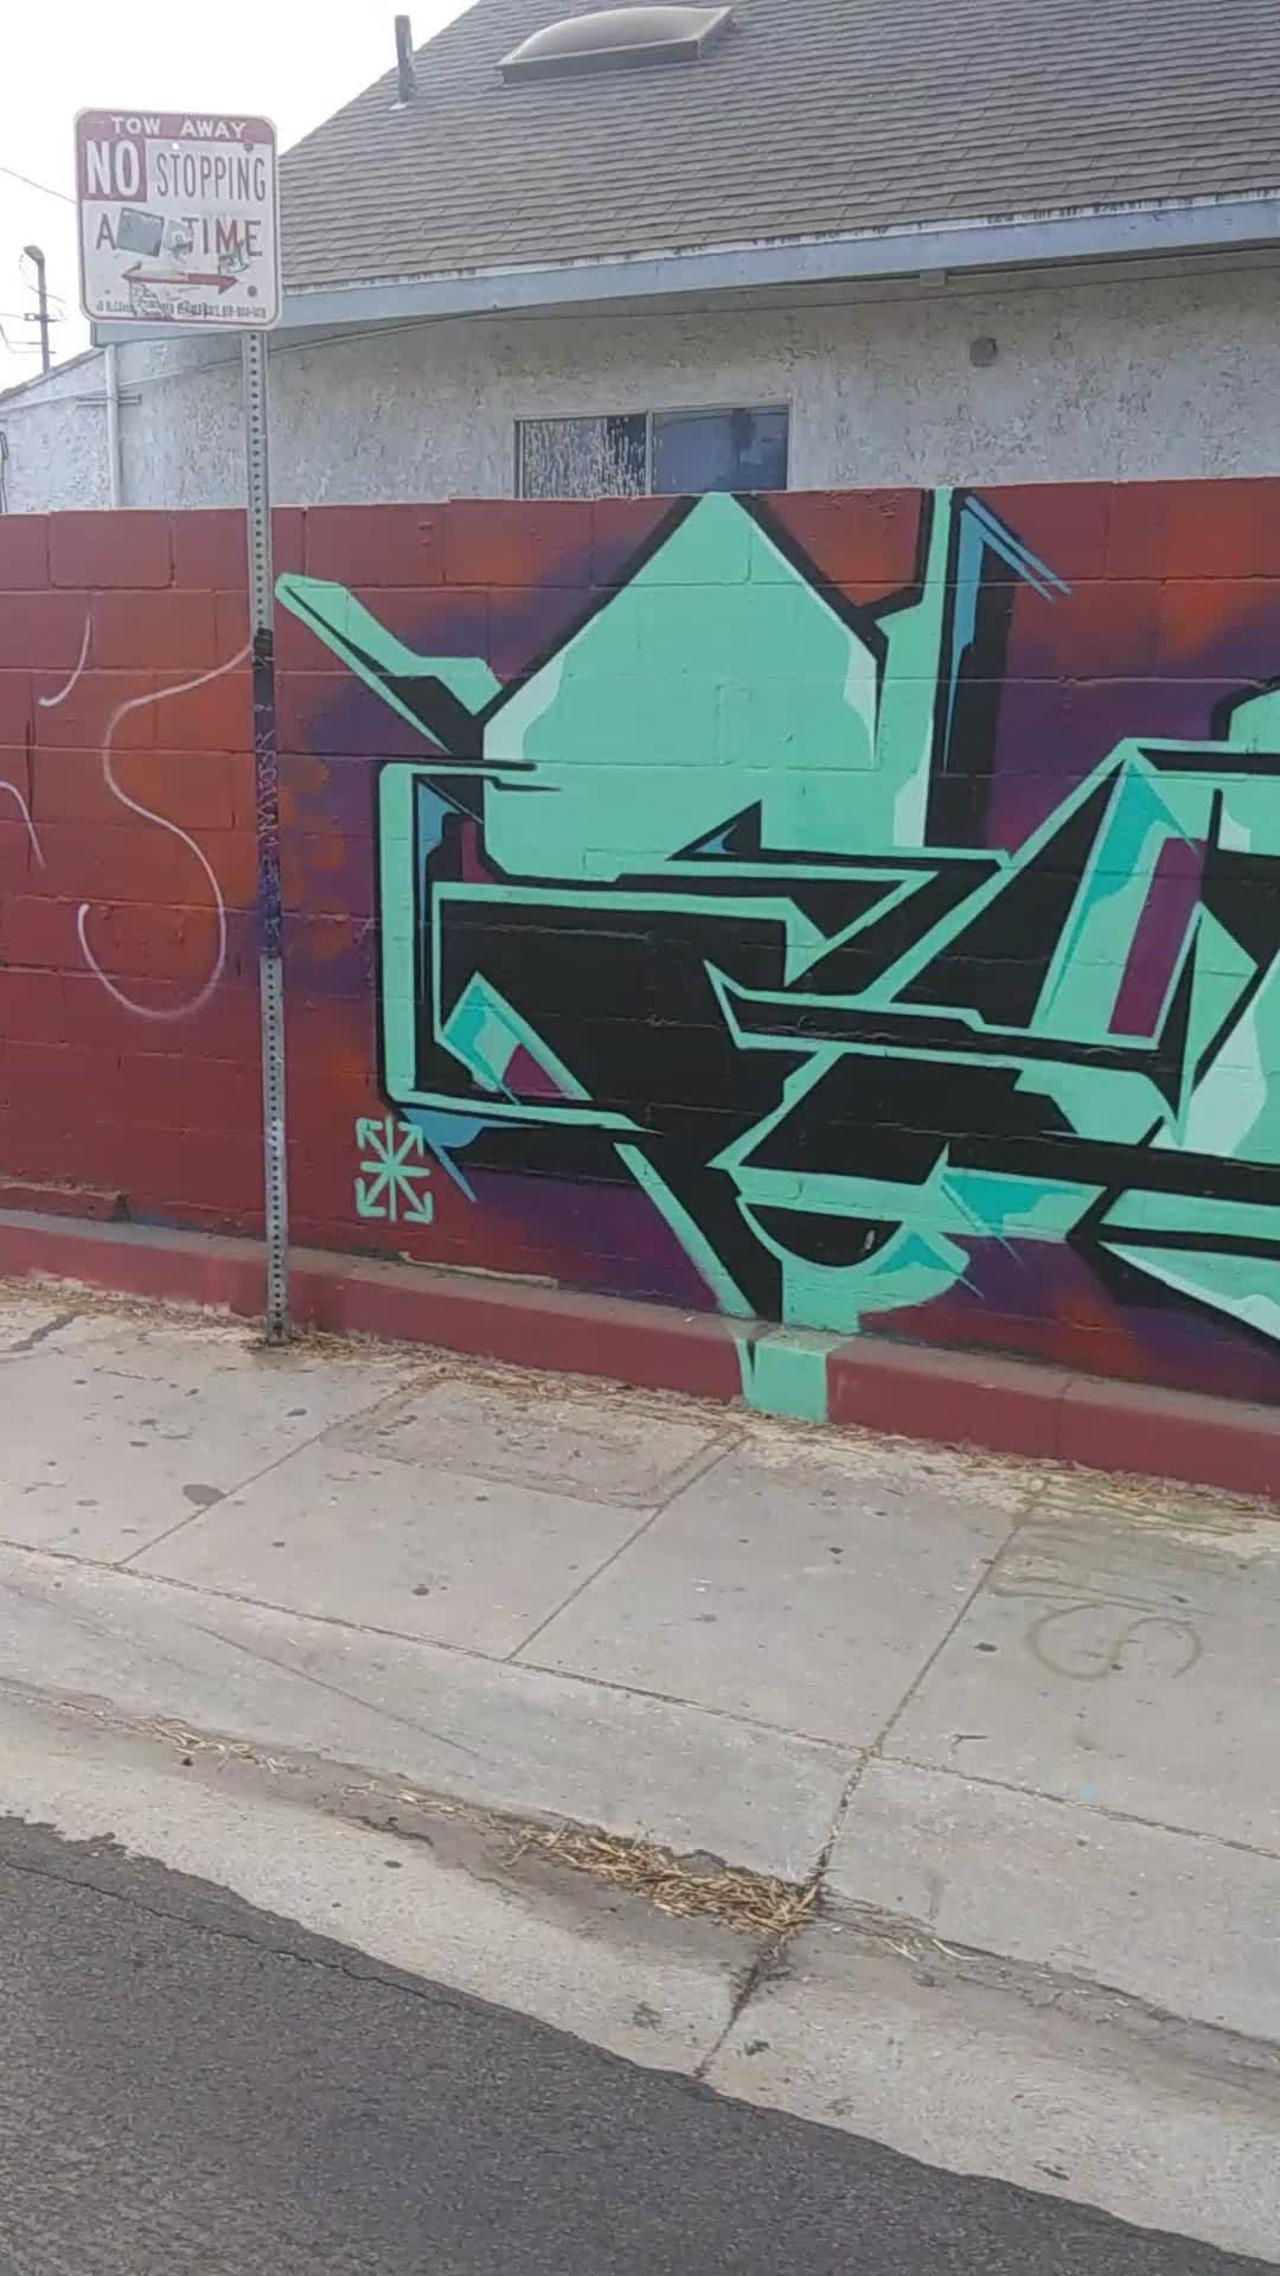 Graffiti Art Los Angeles